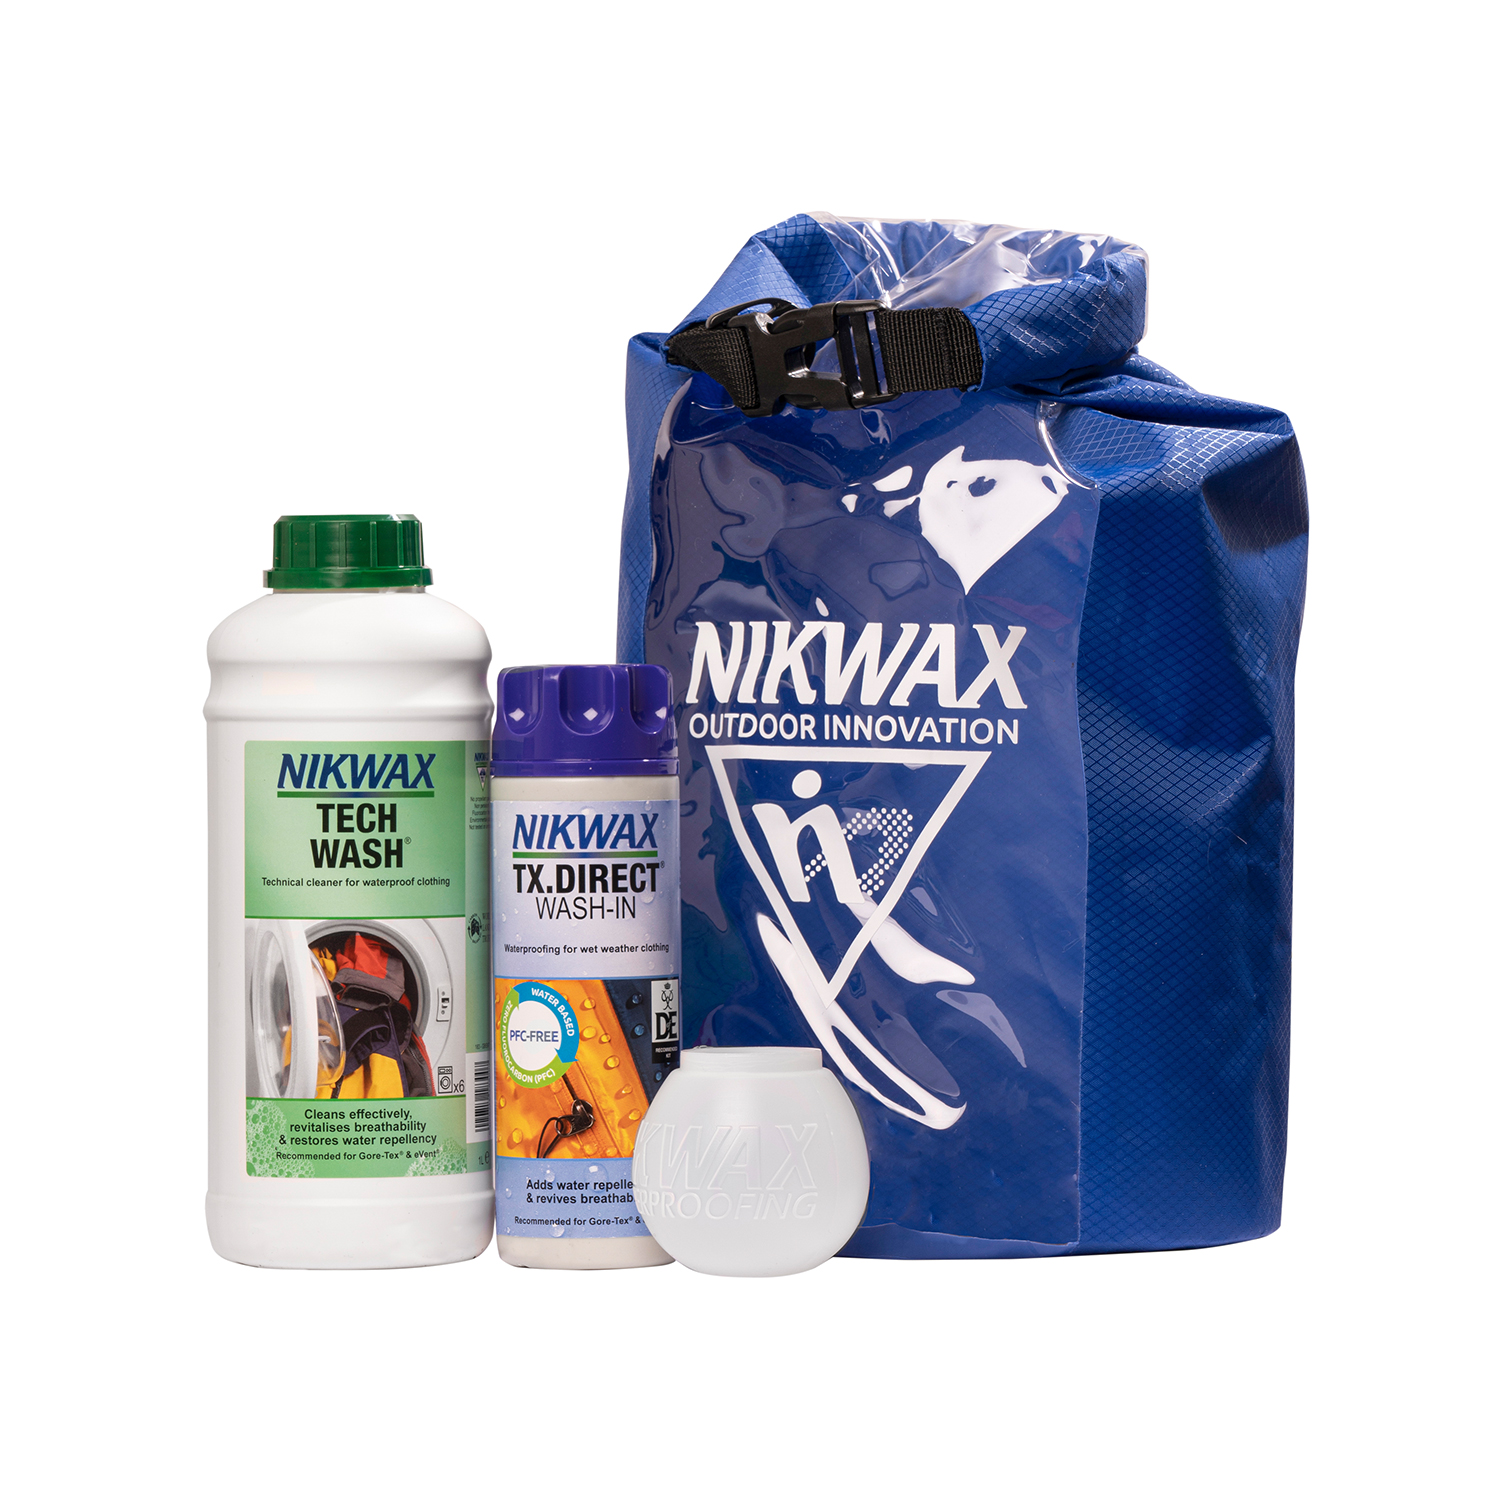 NIKWAX TECH WASH/TX DIRECT POUCH TWIN PACK Clothing Waterproofer 